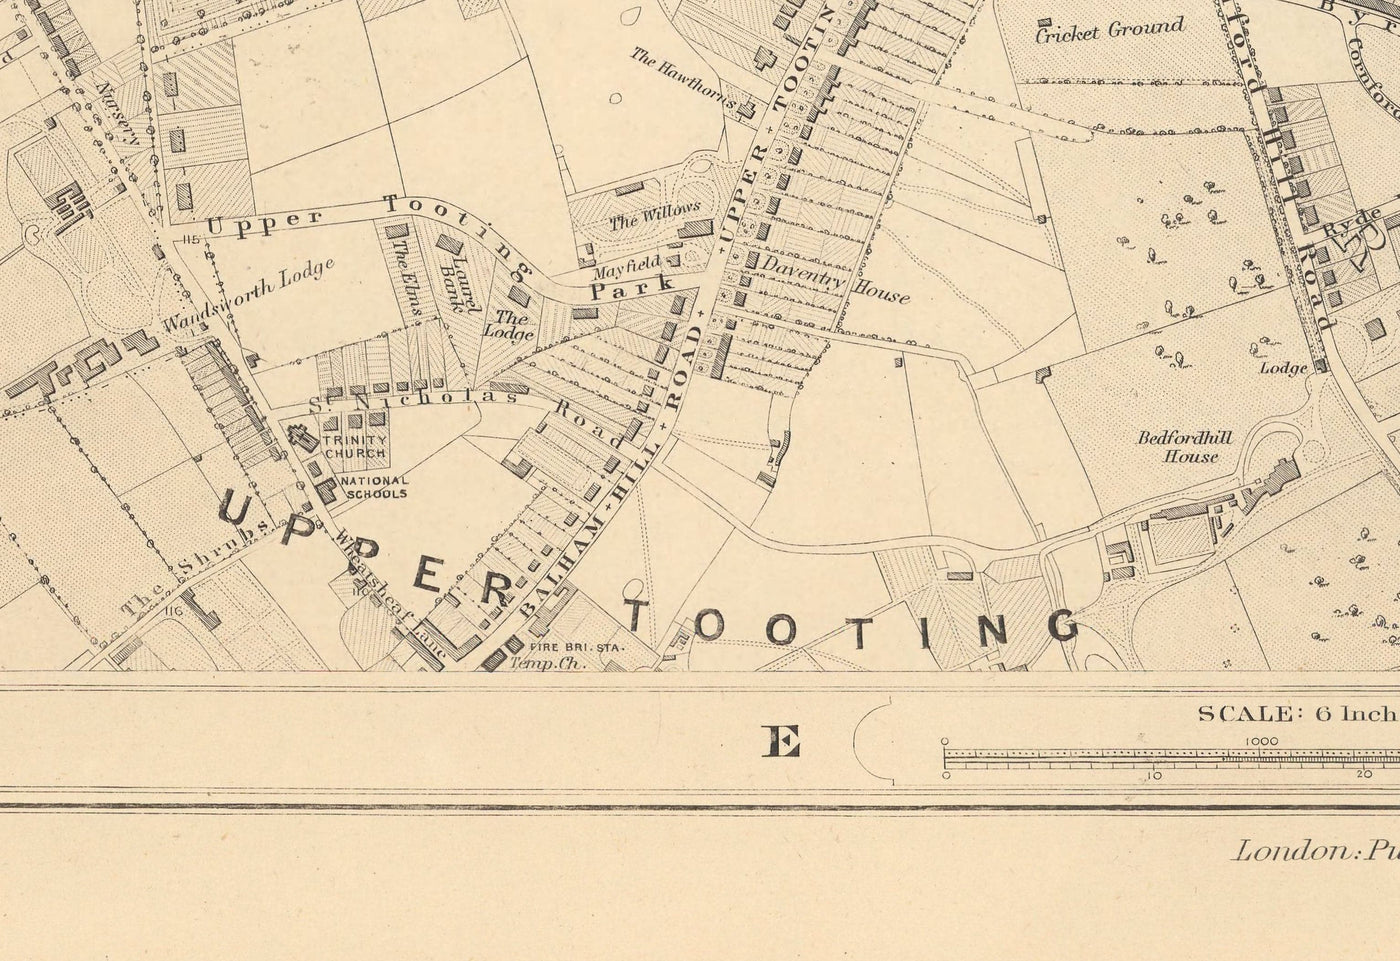 Alte Karte von South London 1862 von Edward Stanford - Clapham, Balham, Brixton, Tooting - SW2, SW4, SW12, SW17, SW11